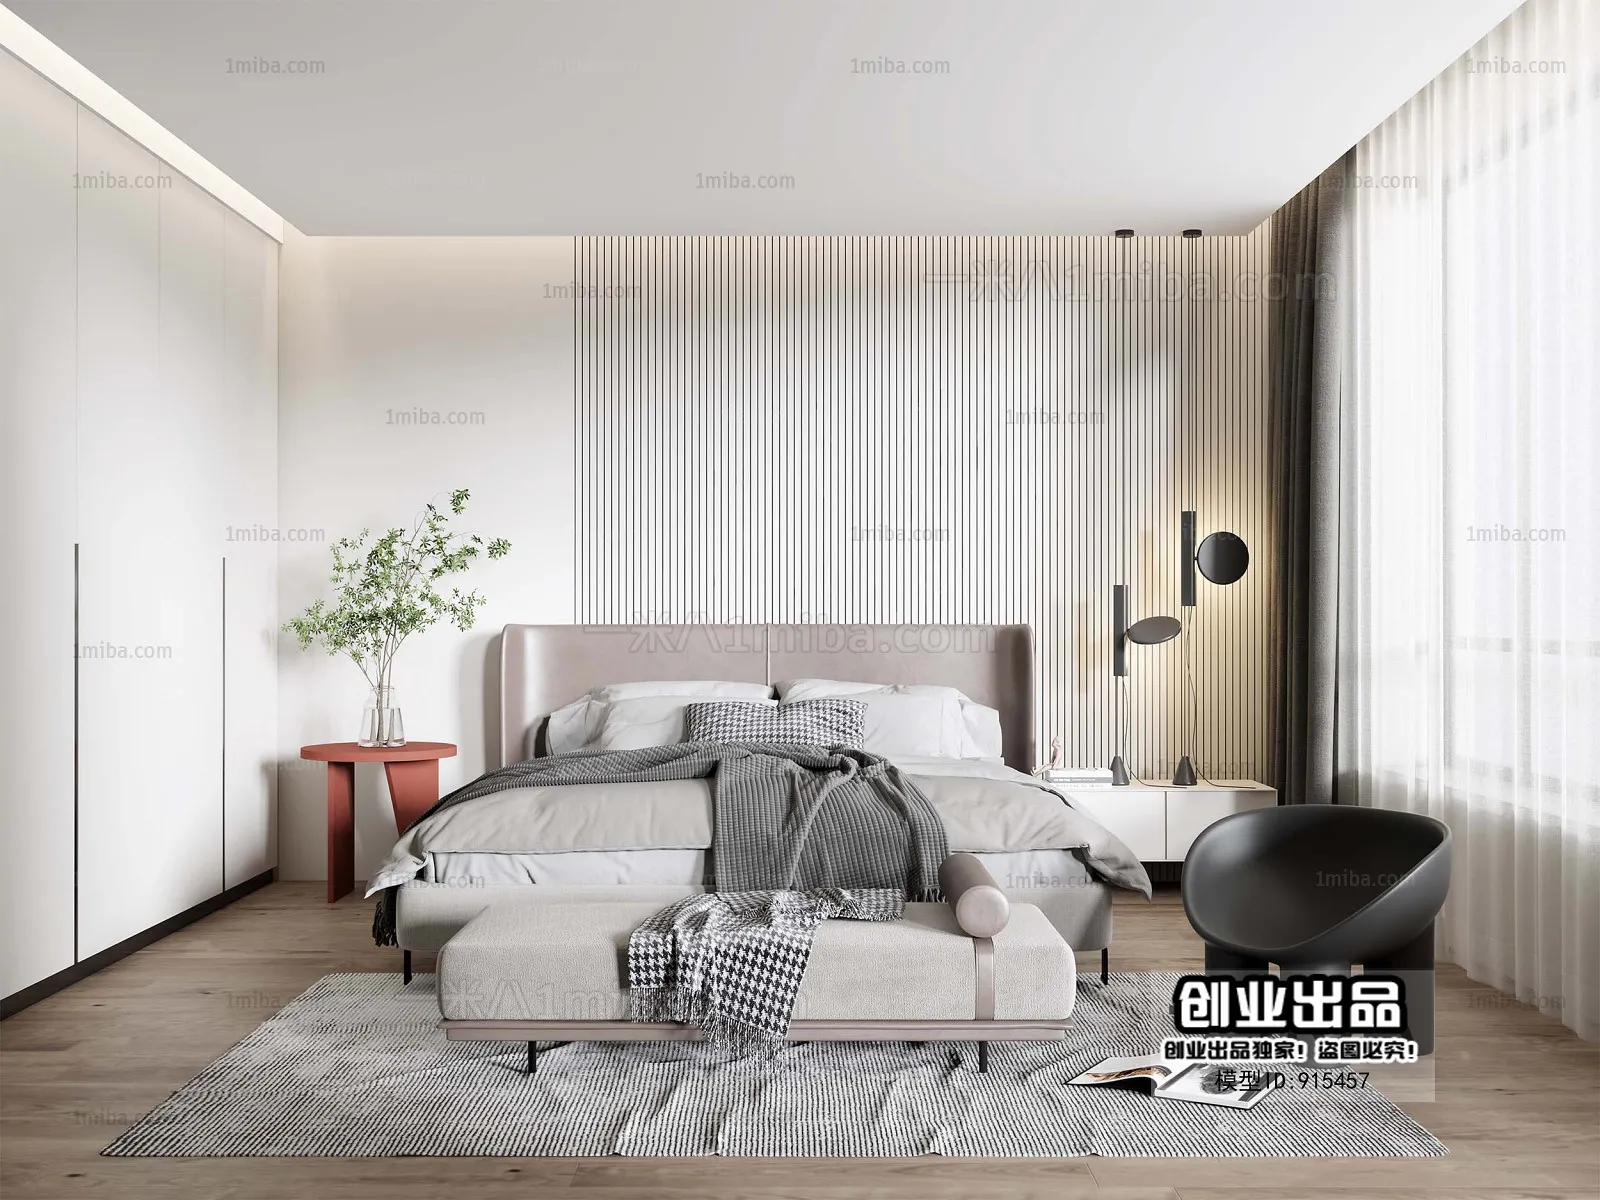 Bedroom – Modern Interior Design – 3D Models – 086